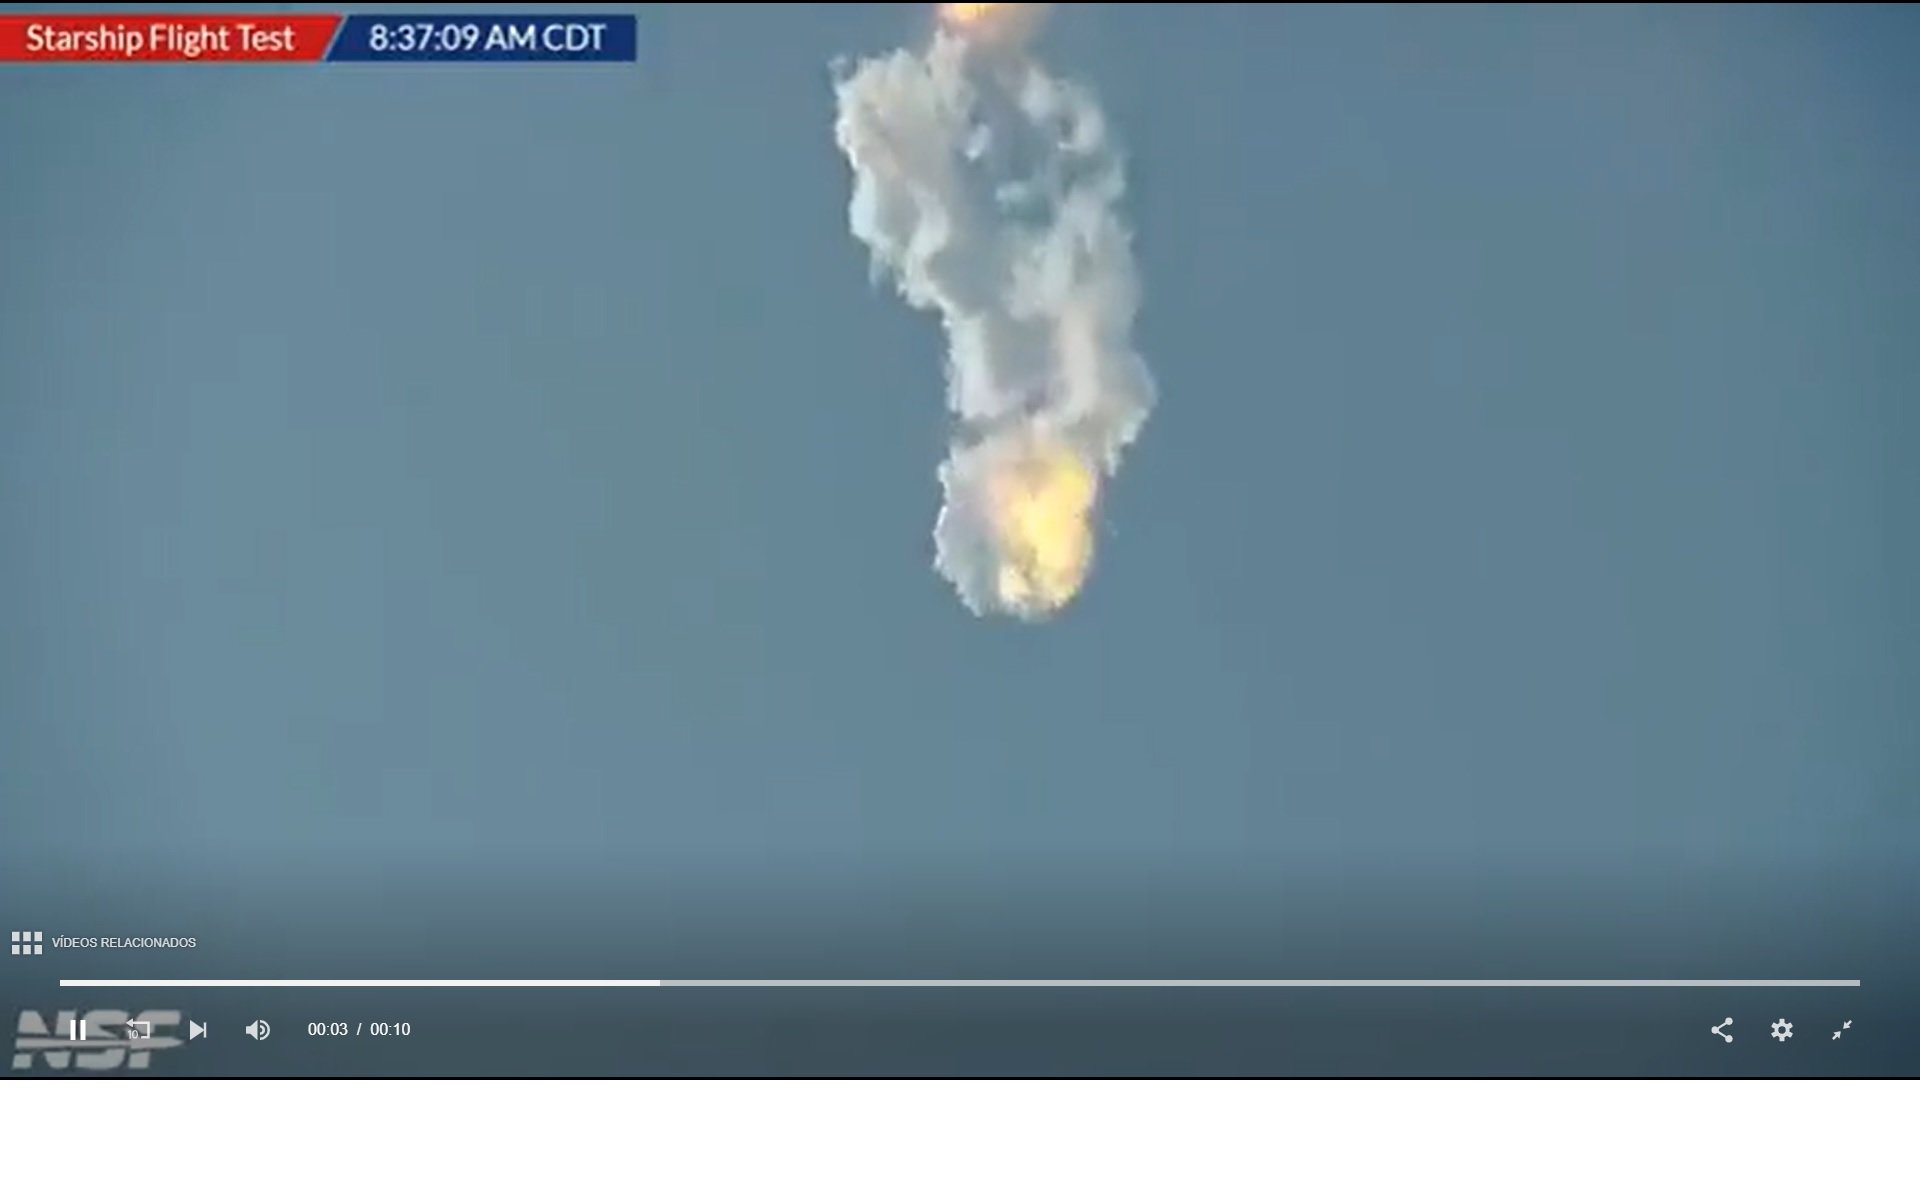 Així ha explotat l'Starship de SpaceX, el supercoet d'Elon Musk | VÍDEO